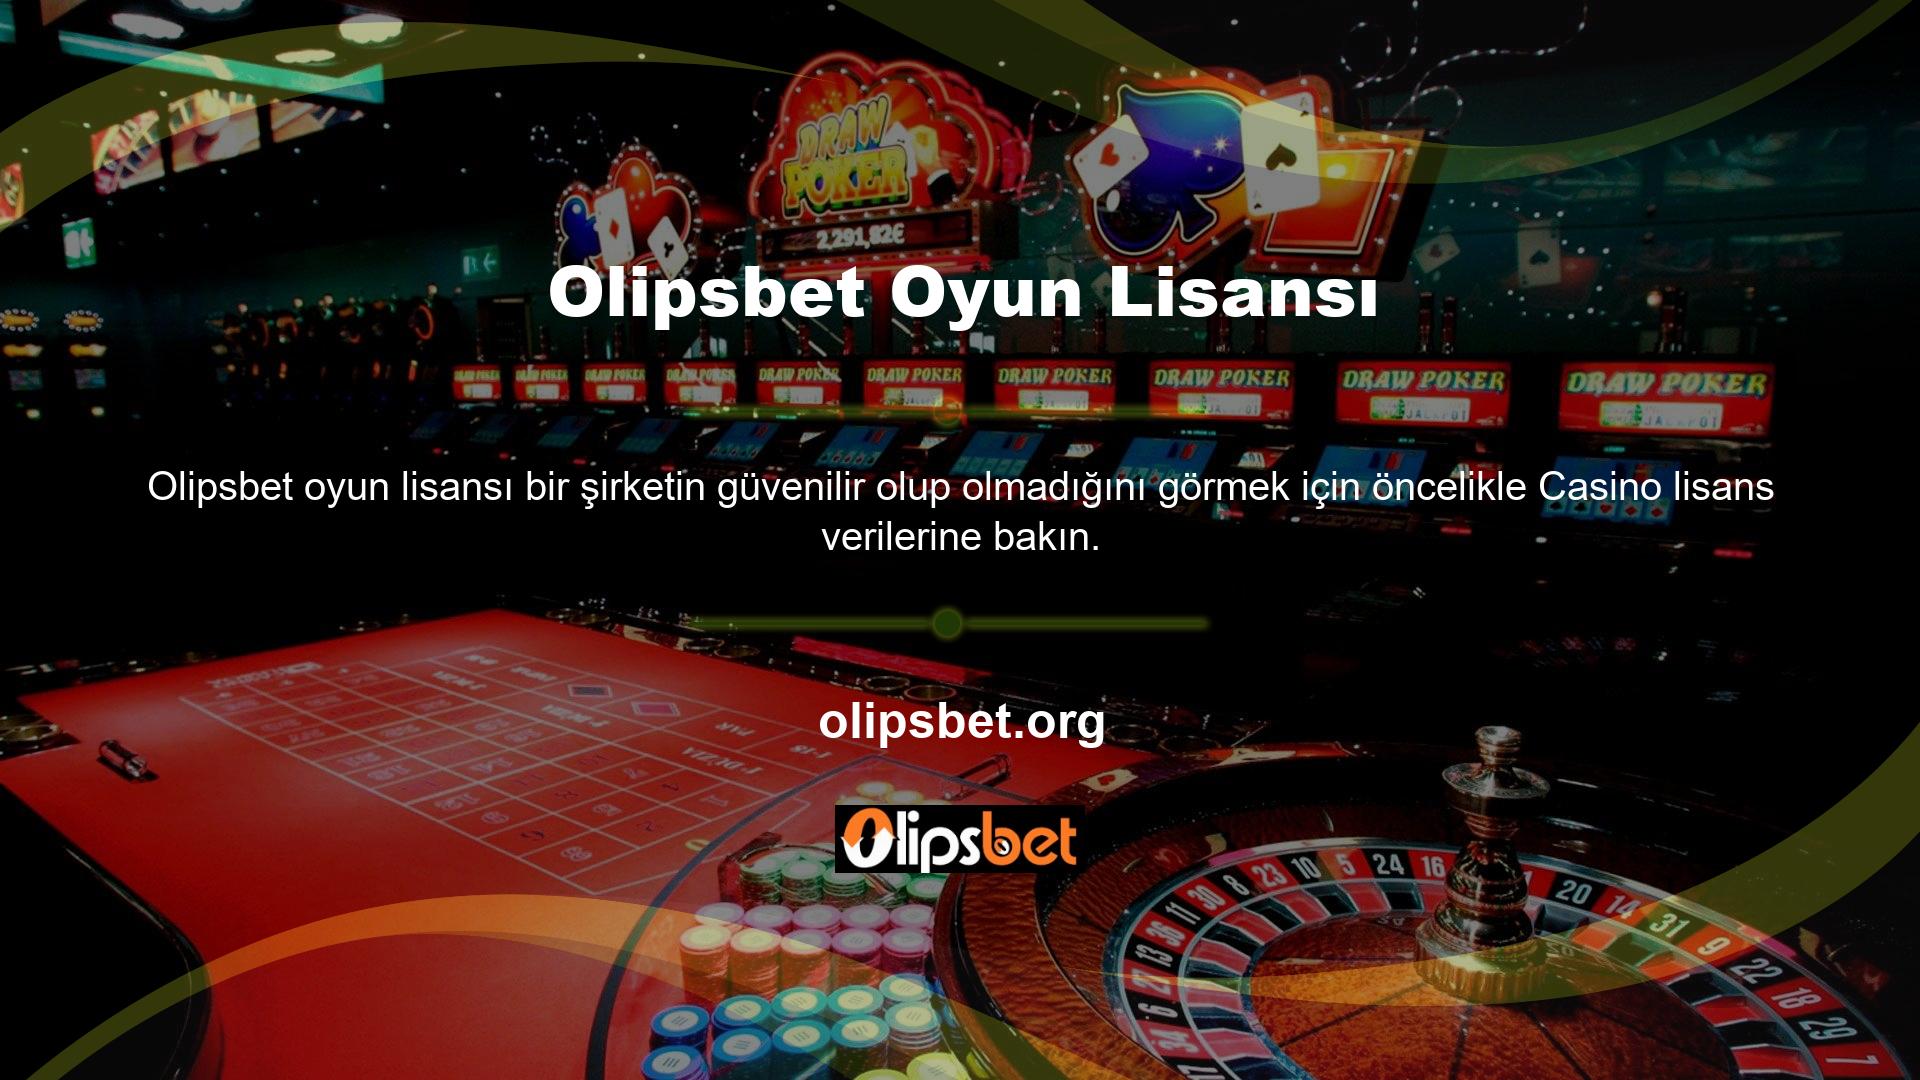 Casino lisanslı bir şirket olan Olipsbet, üyelerine güvenilir bir Olipsbet oyun lisansı sunmaktadır